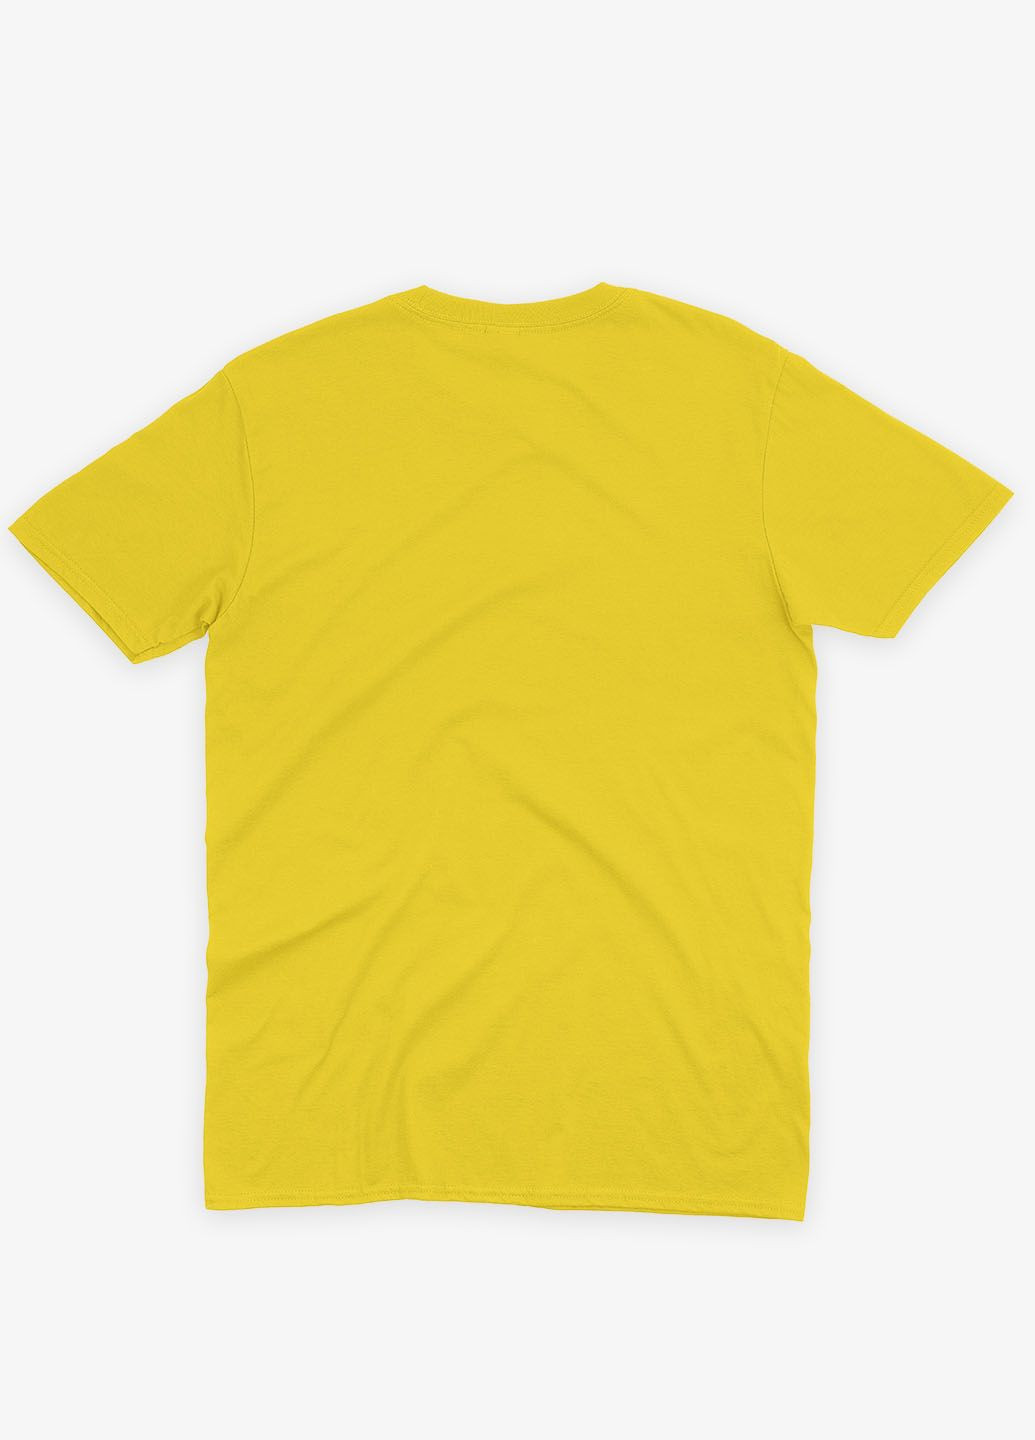 Желтая демисезонная футболка для мальчика с патриотическим принтом (ts001-3-sun-005-1-062-b) Modno